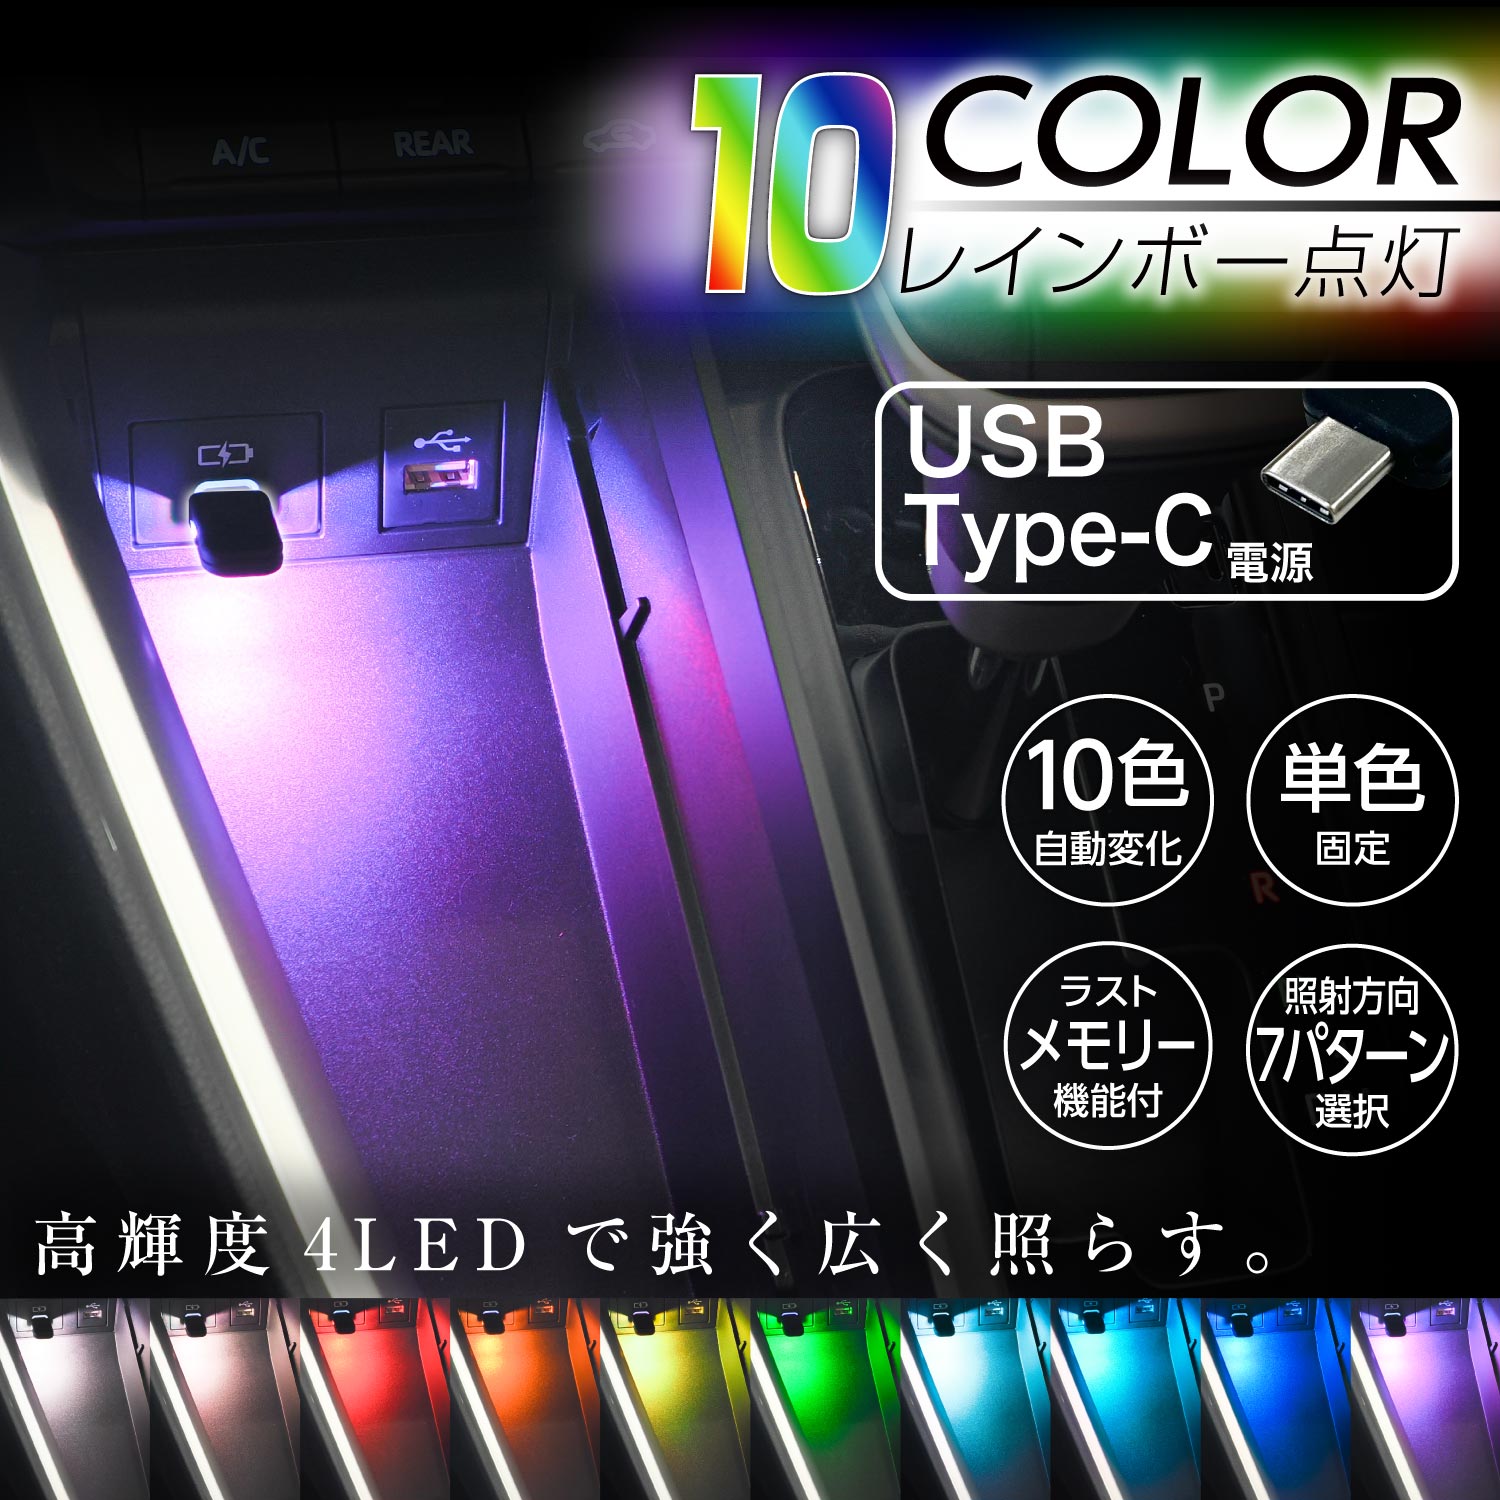 セイワ(SEIWA) 車内用品 LED イルミネーション USB-C ミニタッチライト F347 USB Type-C 10色切替機能 調光機能付き 7種の照射パターン RGB高輝度LED採用 タッチセンサースイッチ 1